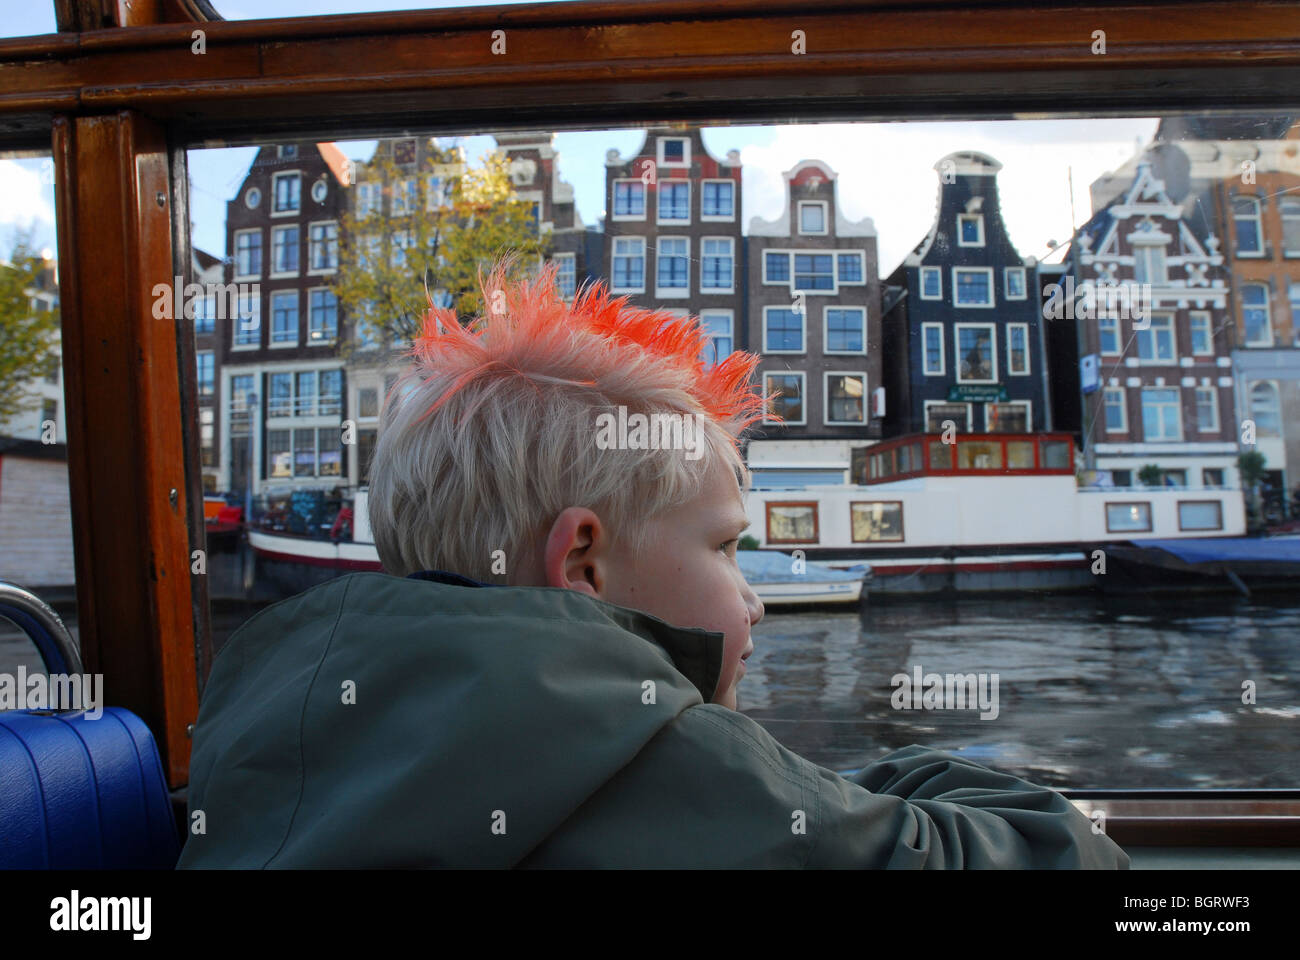 Maisons d'Amsterdam vu d'un bateau, Amsterdam, Pays-Bas Banque D'Images